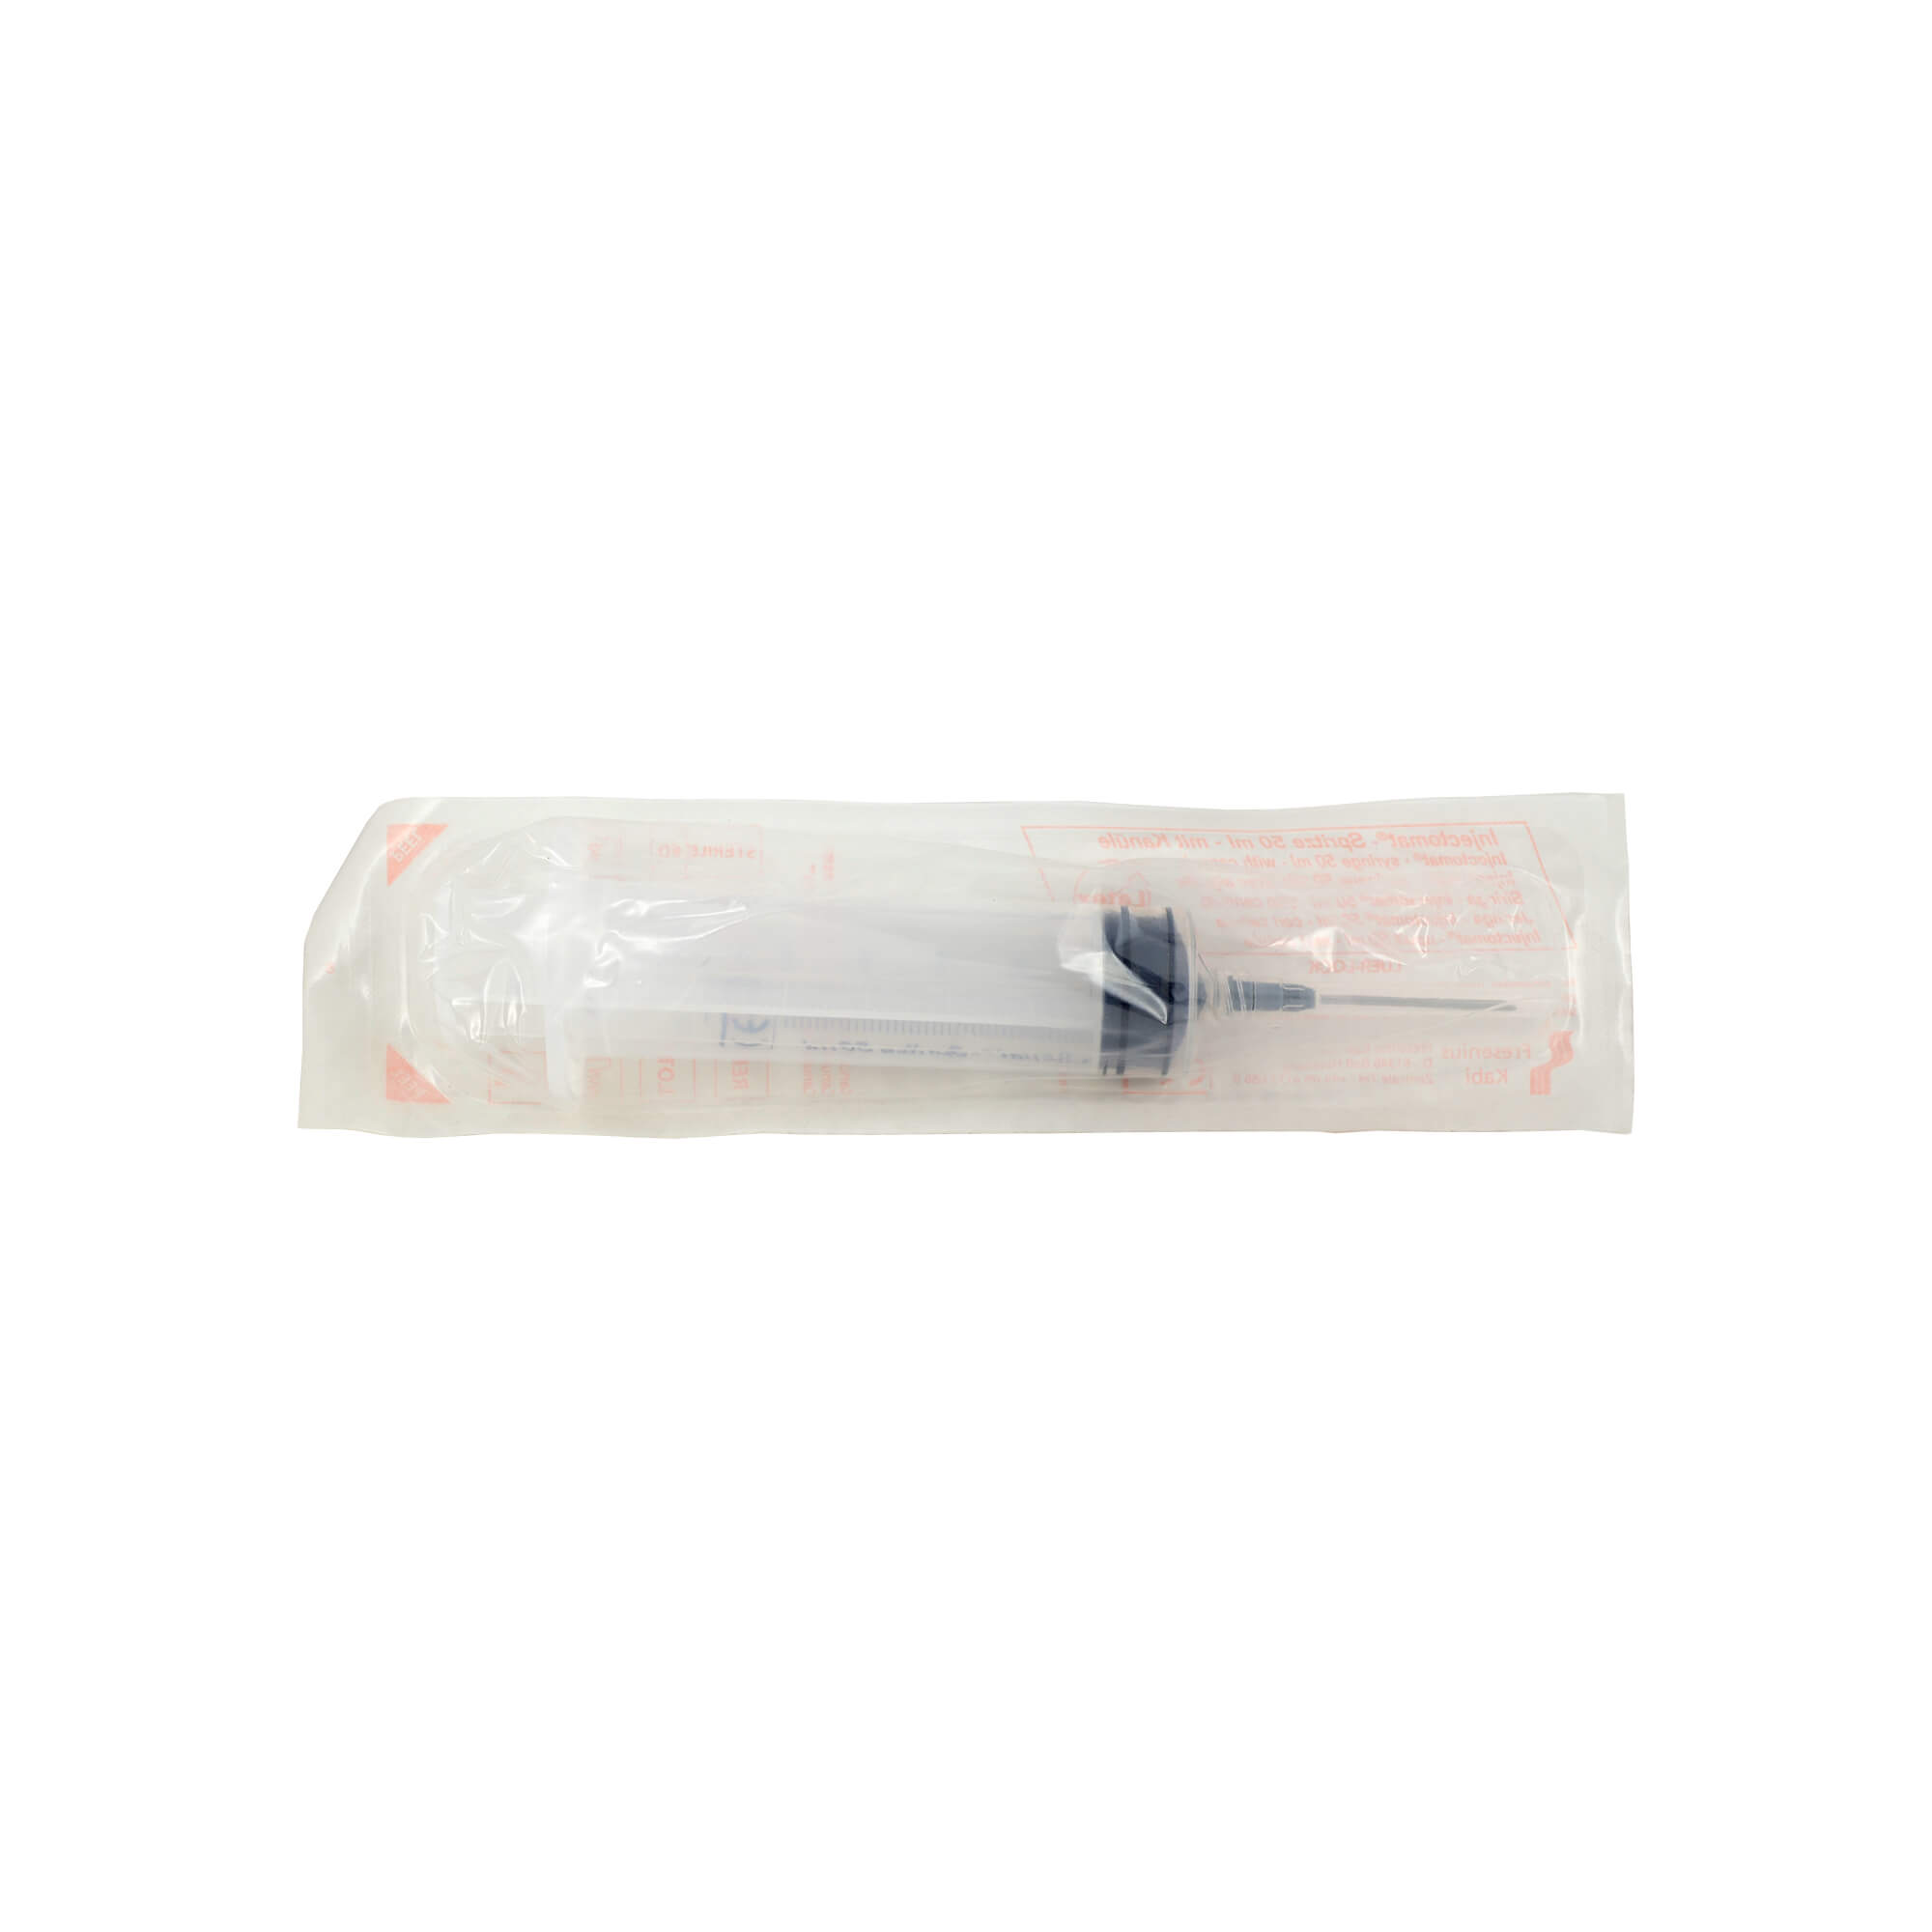 3-teilige Einmalspritzen mit Luer-Lock zur sicheren Verbindung mit Infusionsleitungen für den Einsatz in Spritzenpumpen.